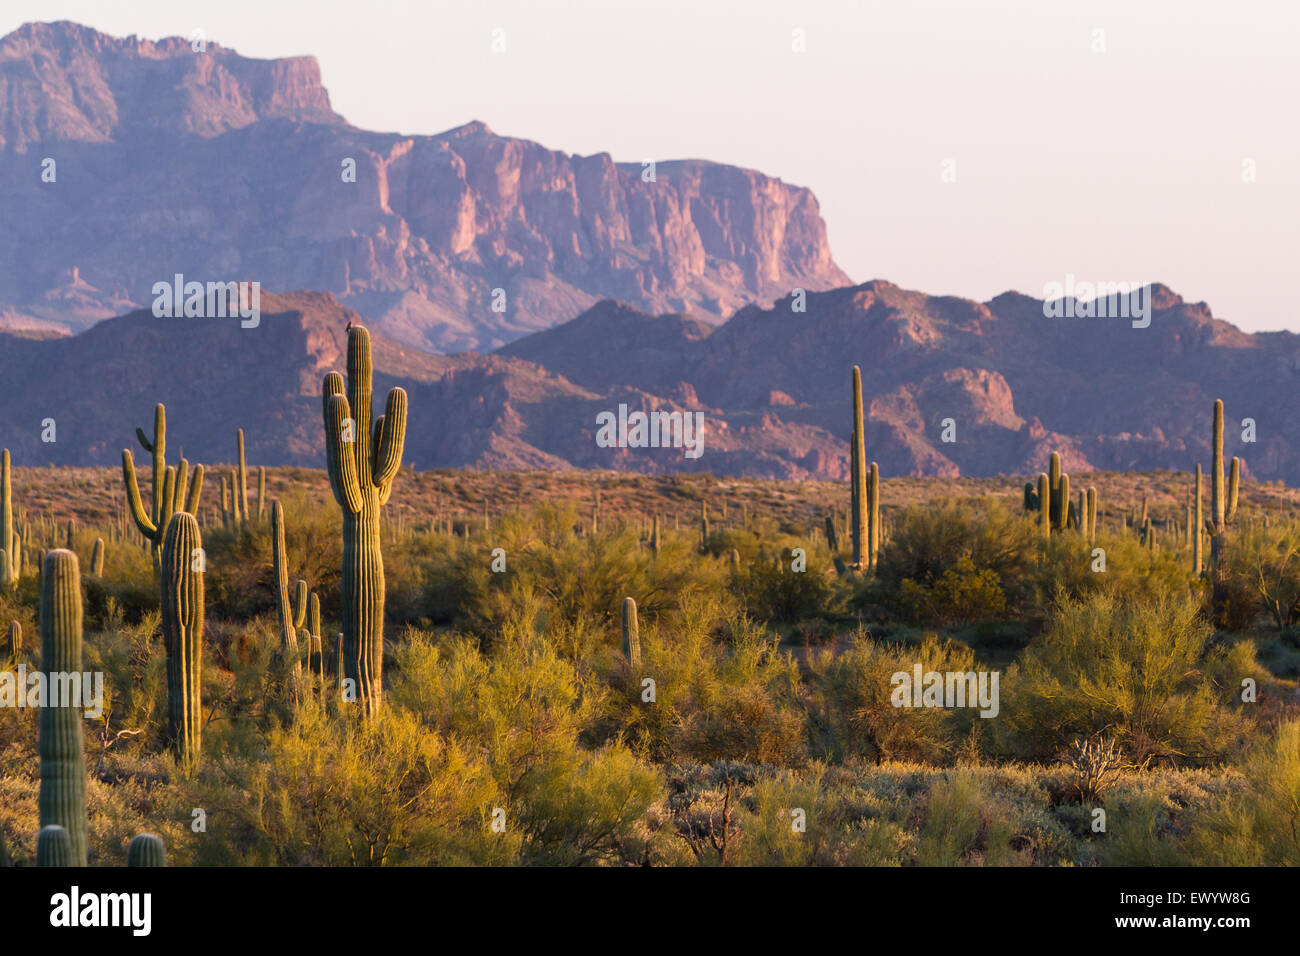 Désert de l'Arizona paysage avec saguaro cactus au printemps Banque D'Images